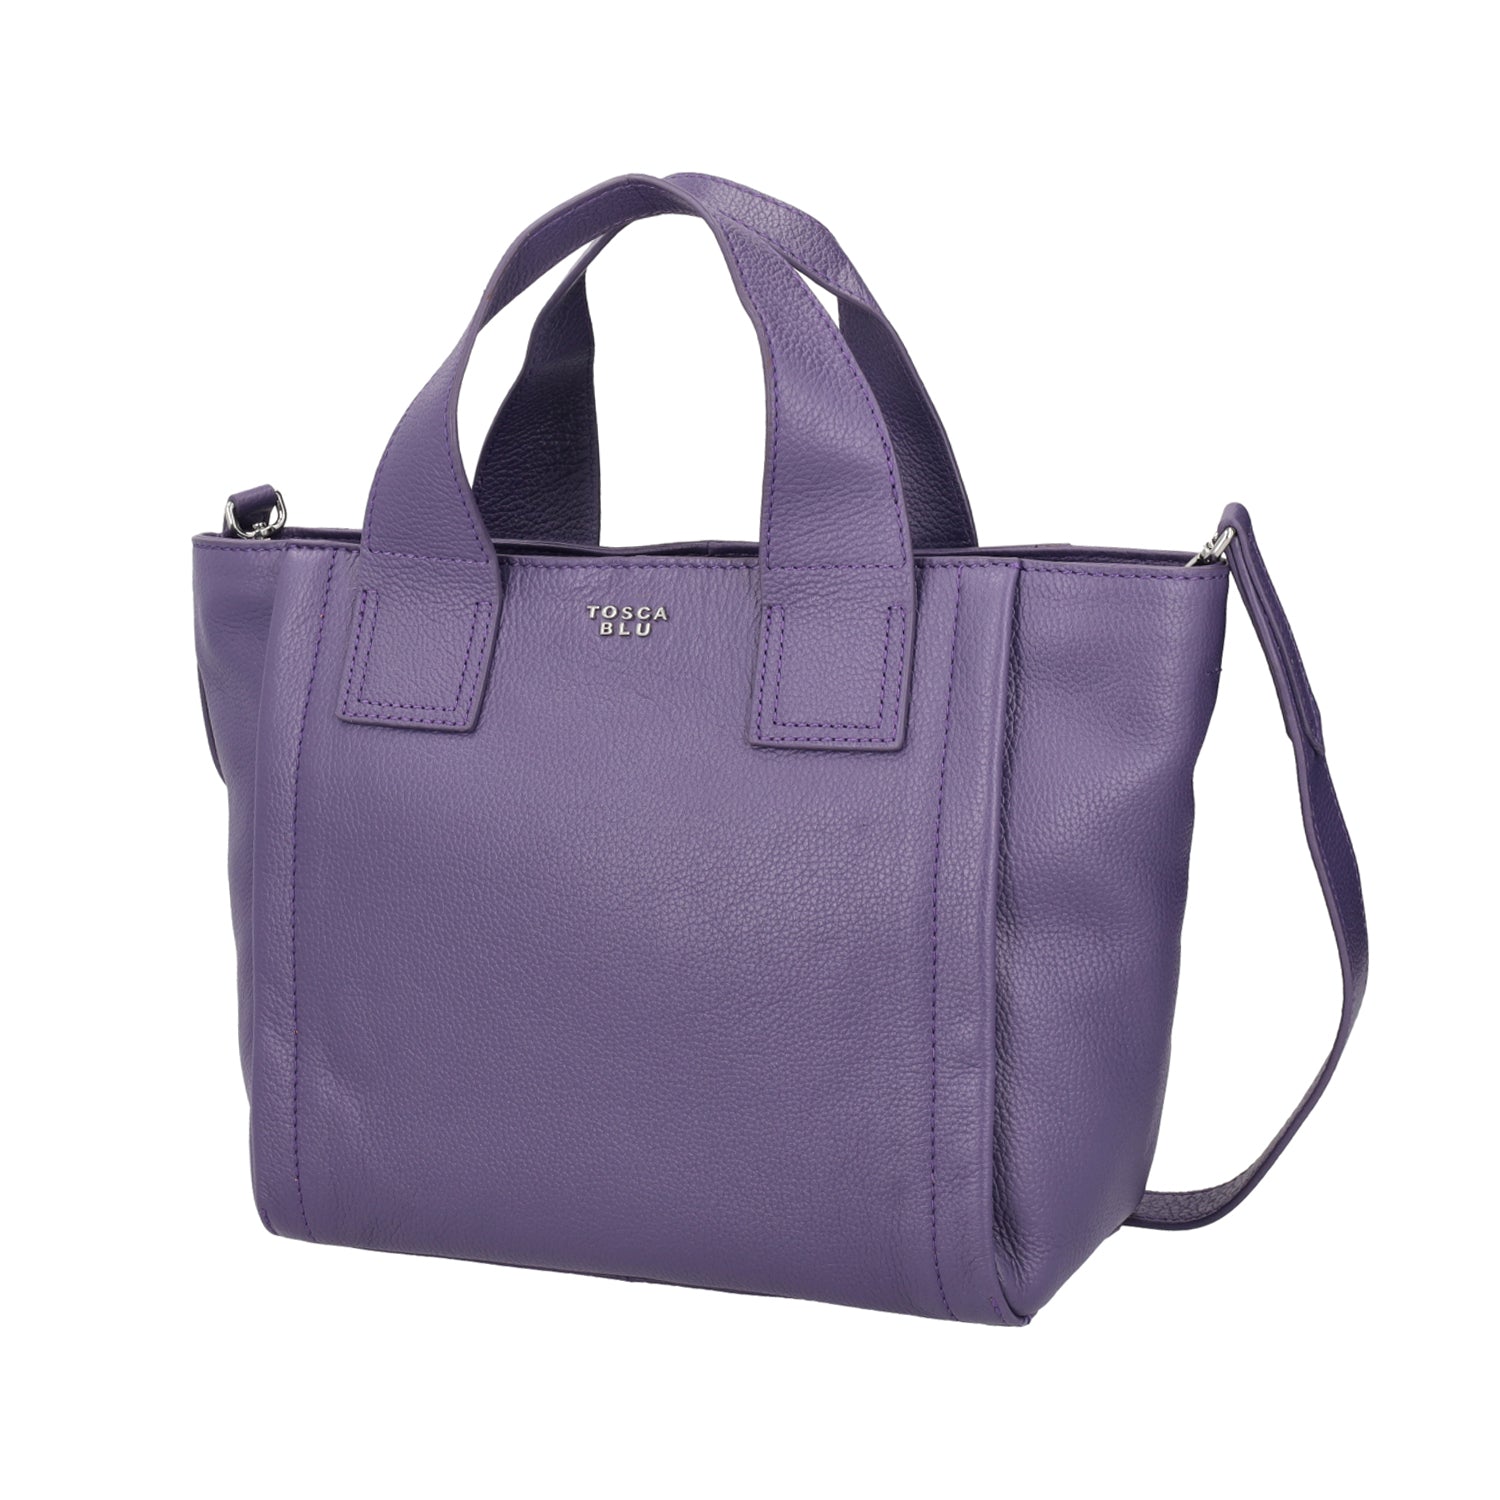 Women's Handbags: Elegant and Practical | Tosca Blu